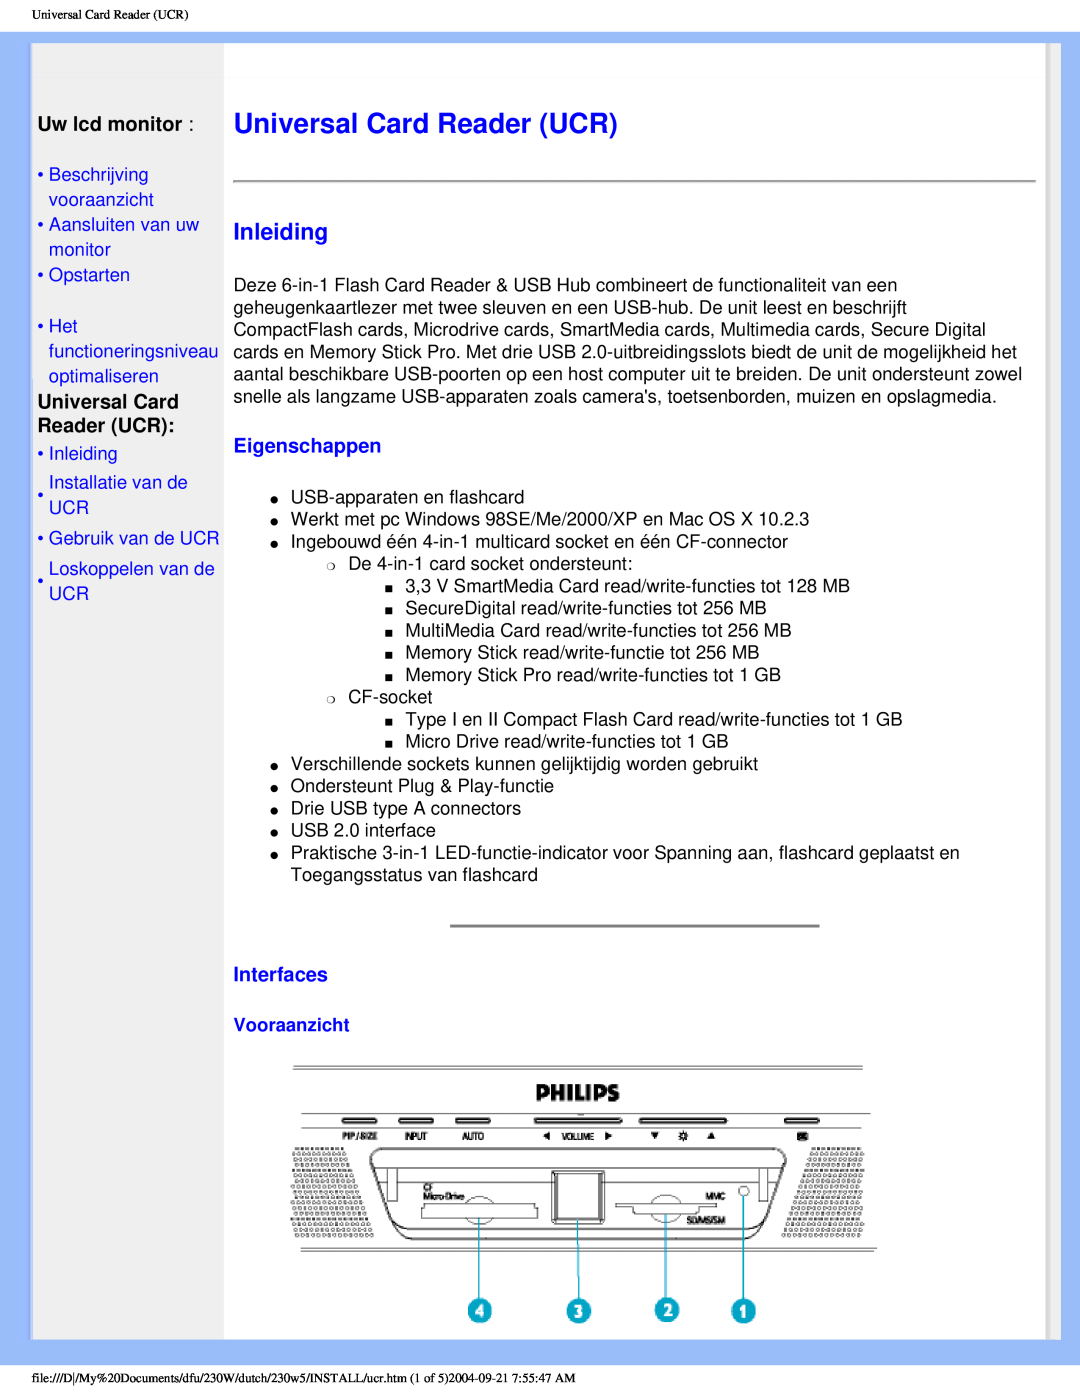 Philips 230W user manual Universal Card Reader UCR, Inleiding, Uw lcd monitor, Eigenschappen, Interfaces, Vooraanzicht 